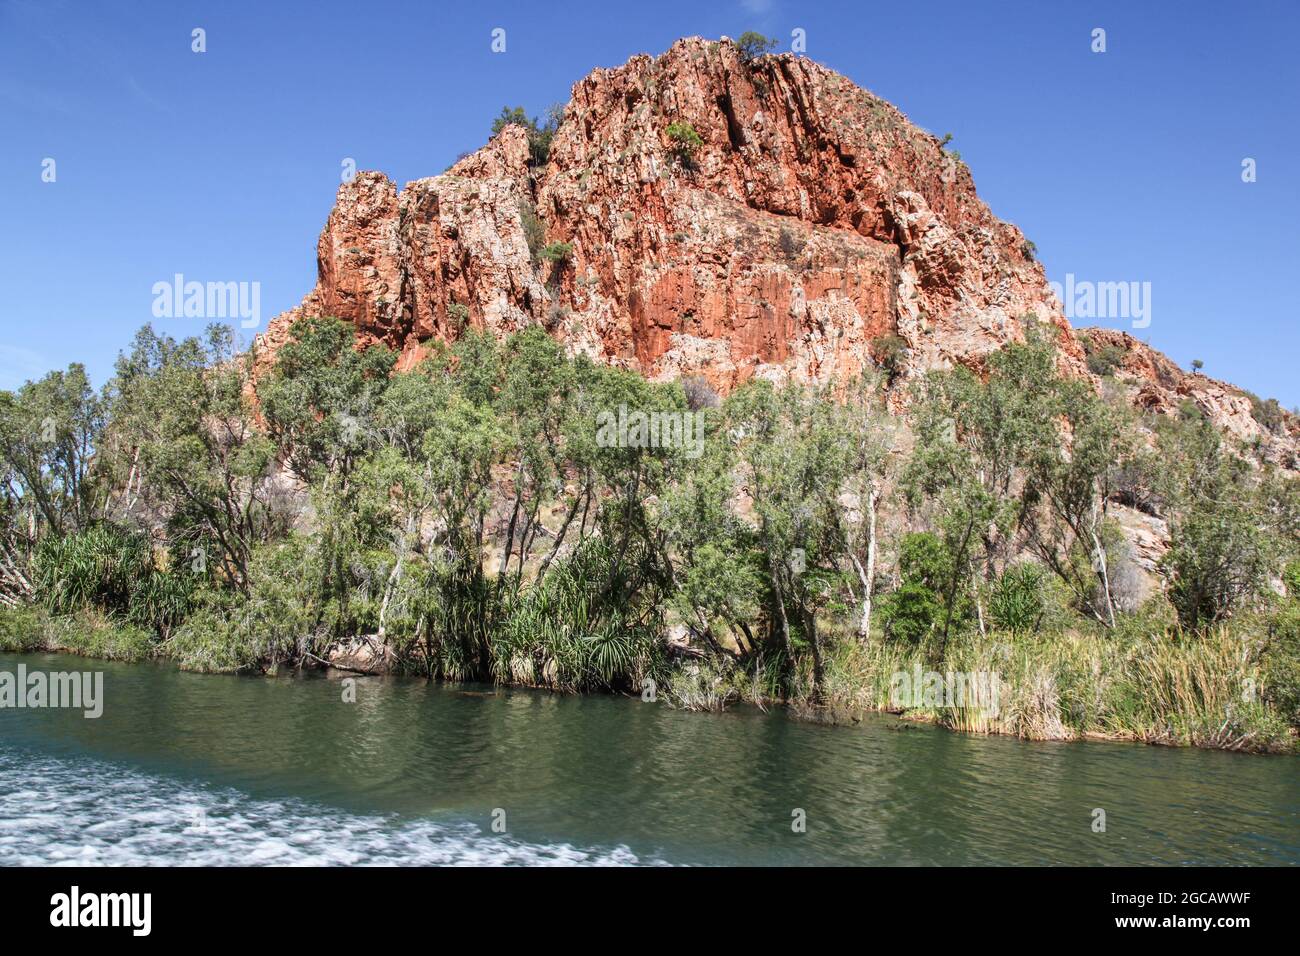 Roter Felsvorsprung am Ord River Western Australia. Flusskreuzfahrten auf dem Fluss sind eine beliebte touristische Aktivität Stockfoto